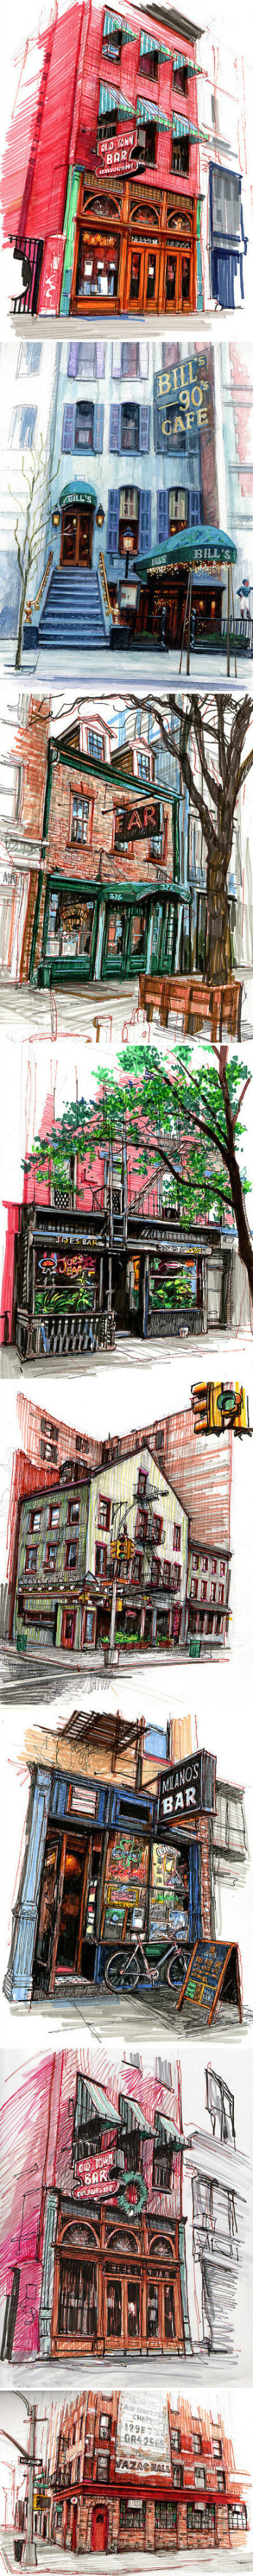 艺术家Stephen Gardner用他的彩笔记录下来一座又一座他光顾过的酒吧和咖啡馆，画面非常纪实并具有场景感，仿佛诉说着每个酒吧或咖啡馆曾经发生的故事……